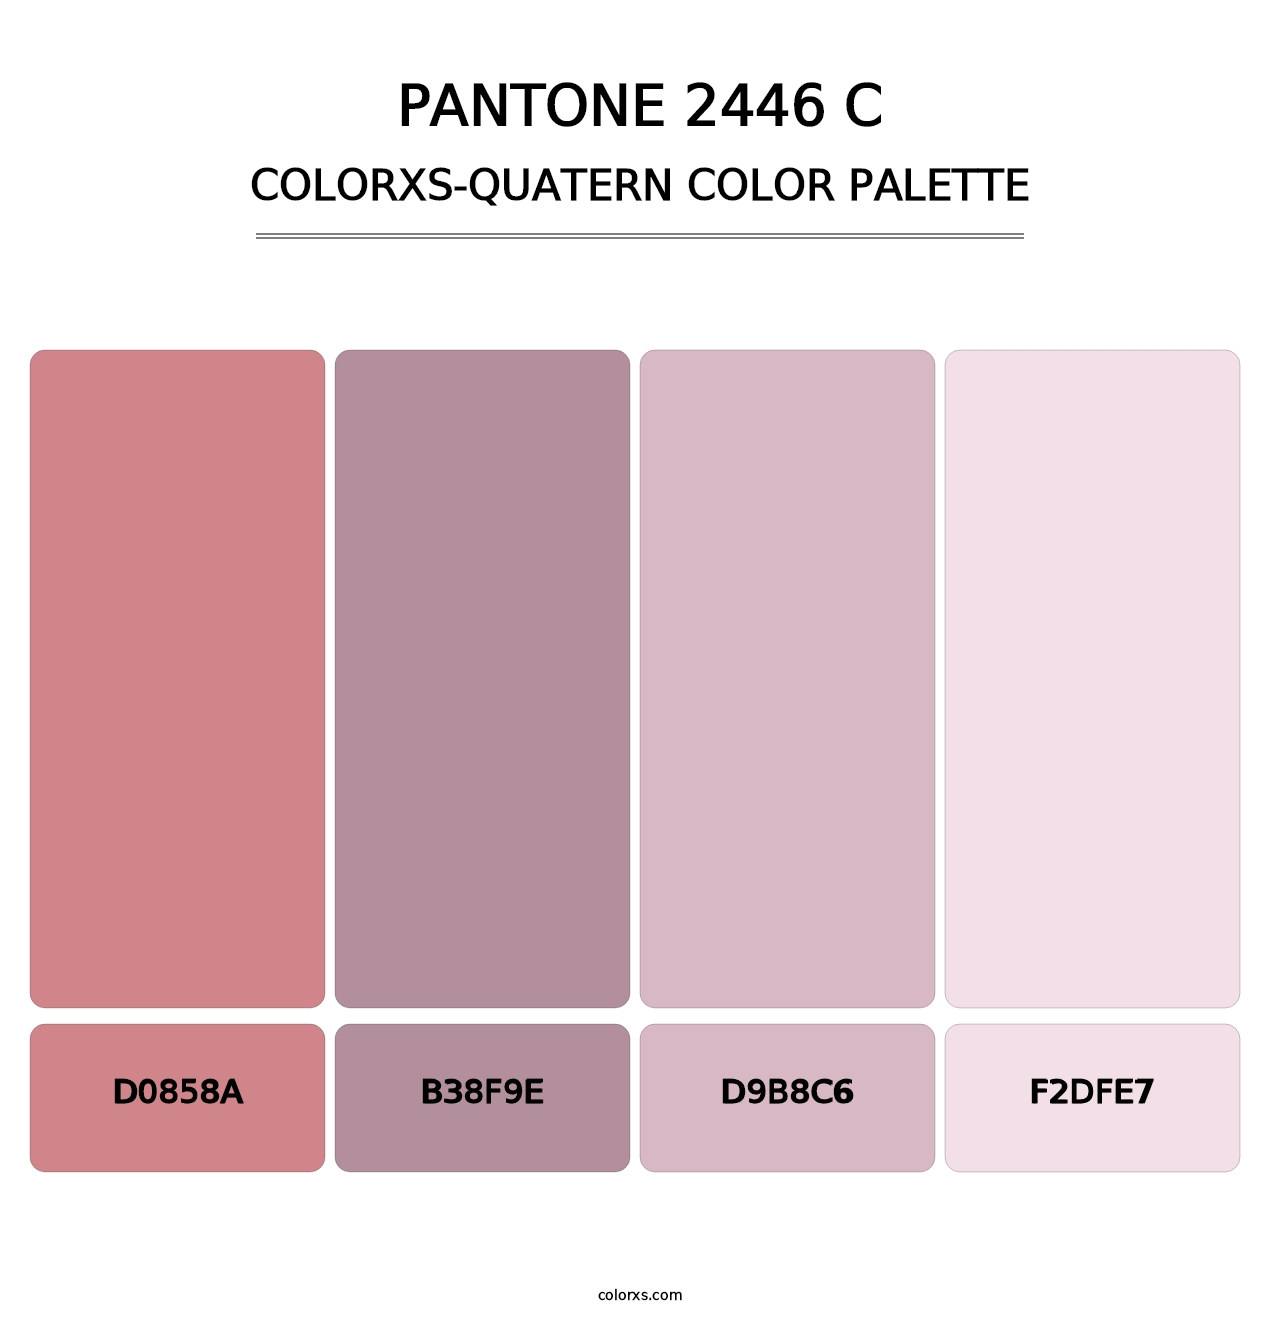 PANTONE 2446 C - Colorxs Quatern Palette